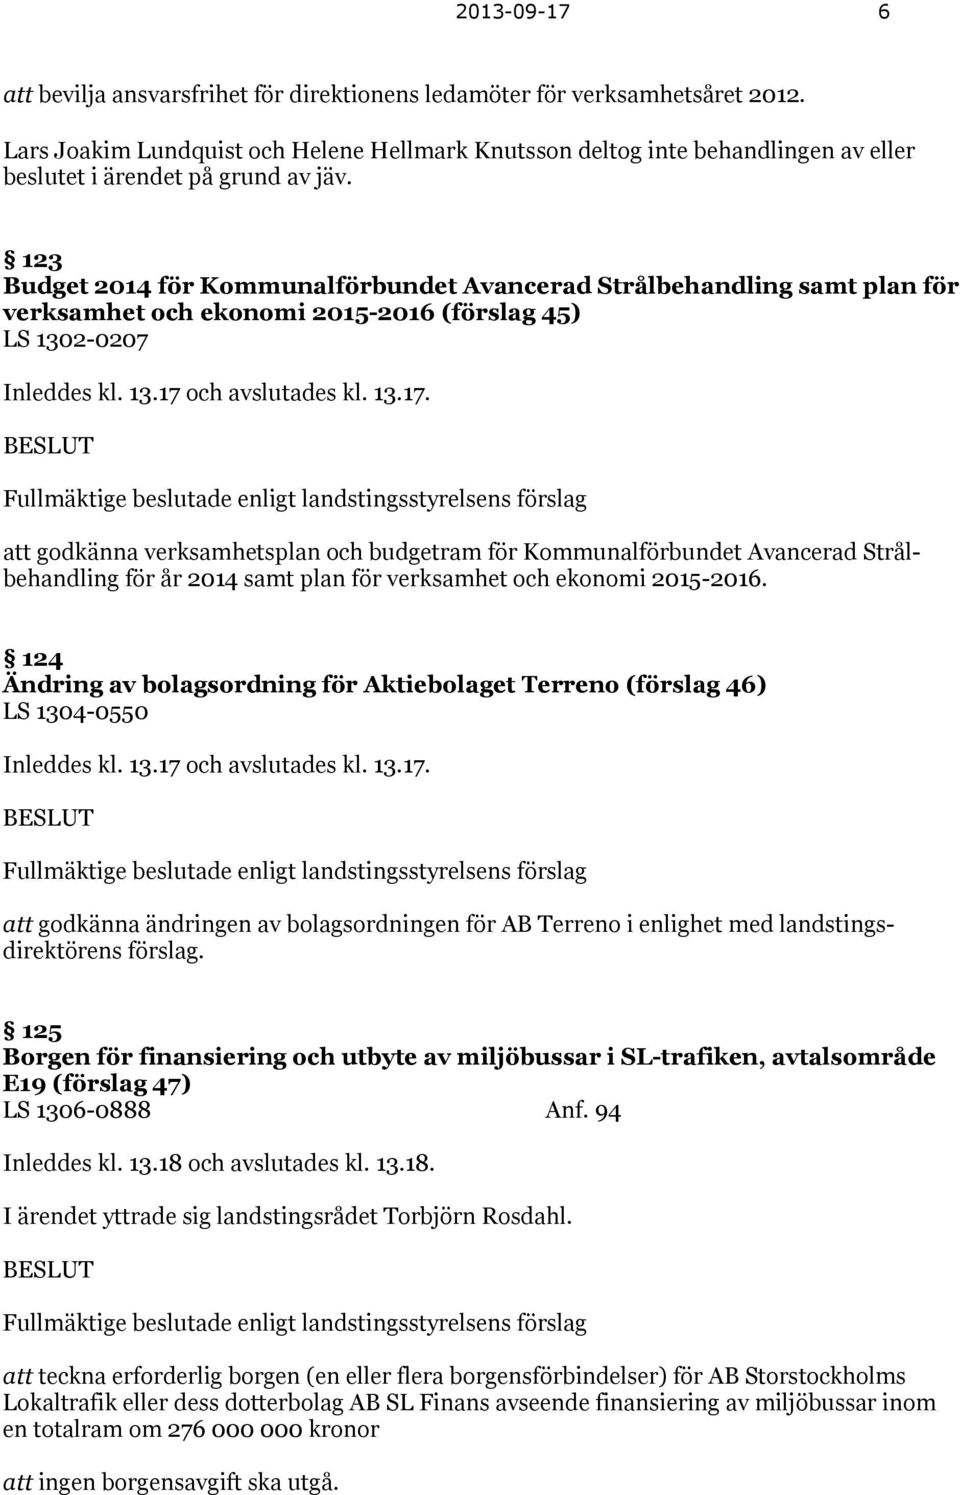 123 Budget 2014 för Kommunalförbundet Avancerad Strålbehandling samt plan för verksamhet och ekonomi 2015-2016 (förslag 45) LS 1302-0207 Inleddes kl. 13.17 